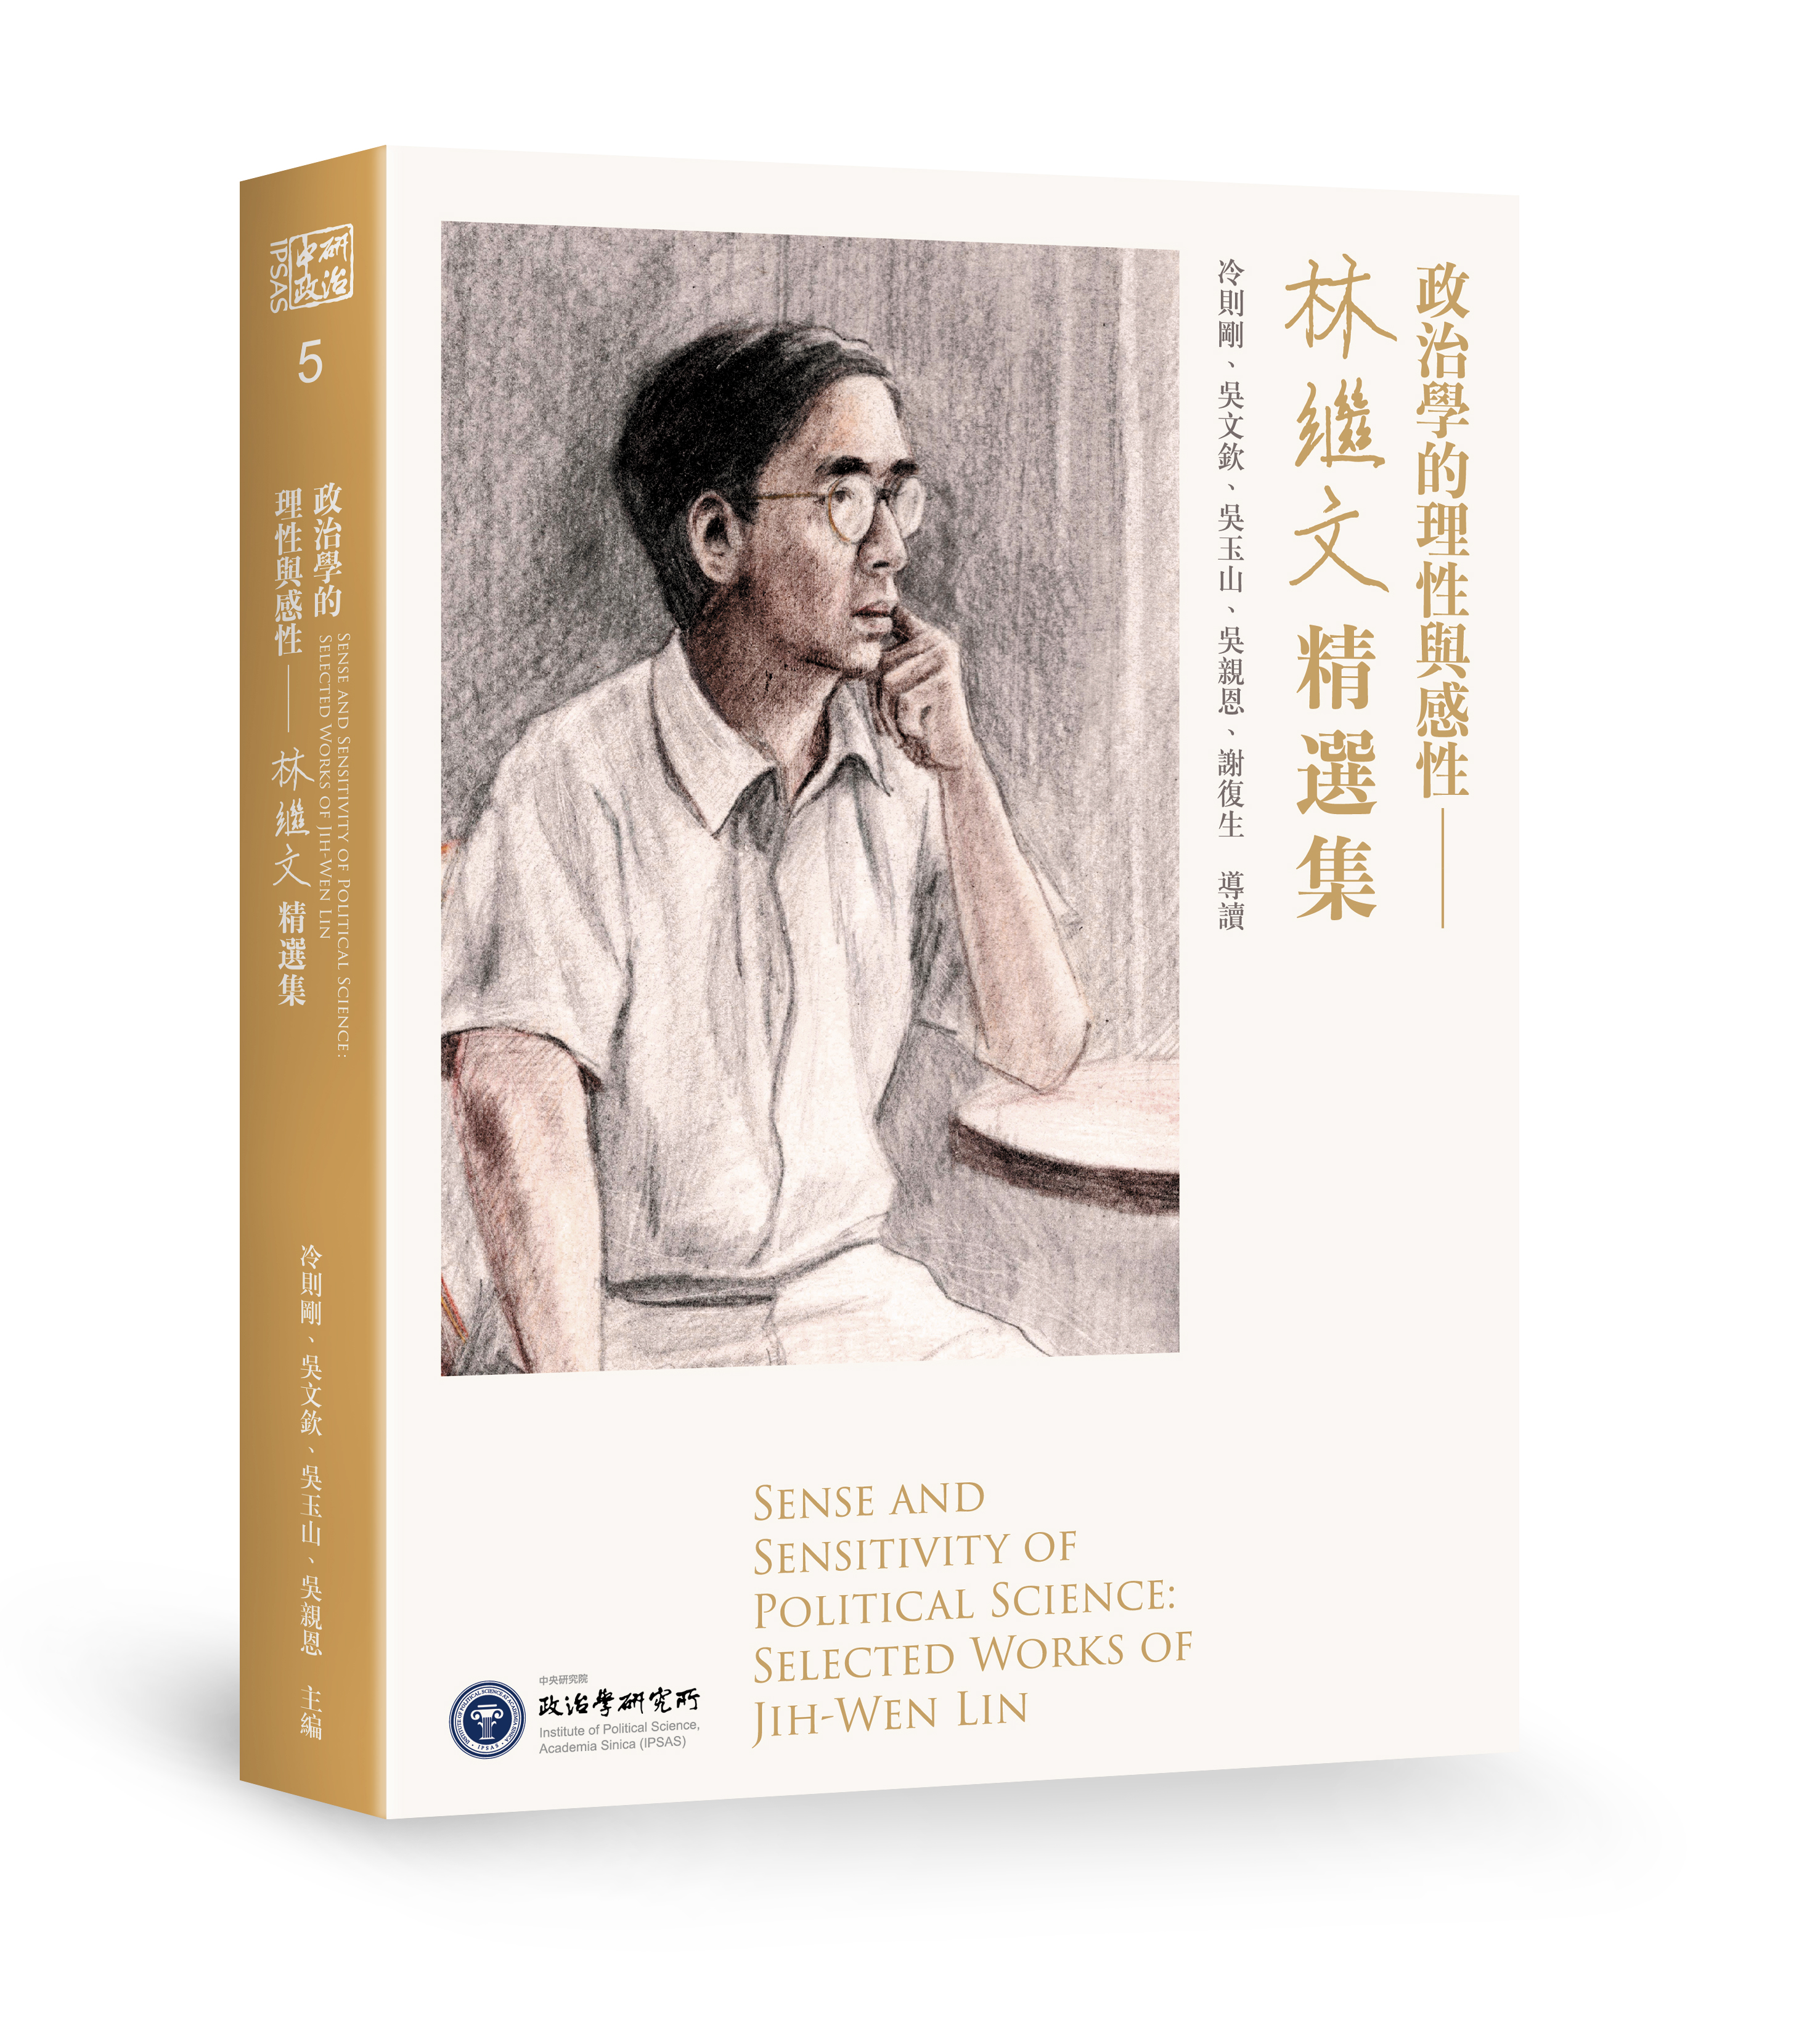 政治所新書《政治學的理性與感性──林繼文精選集》已出版